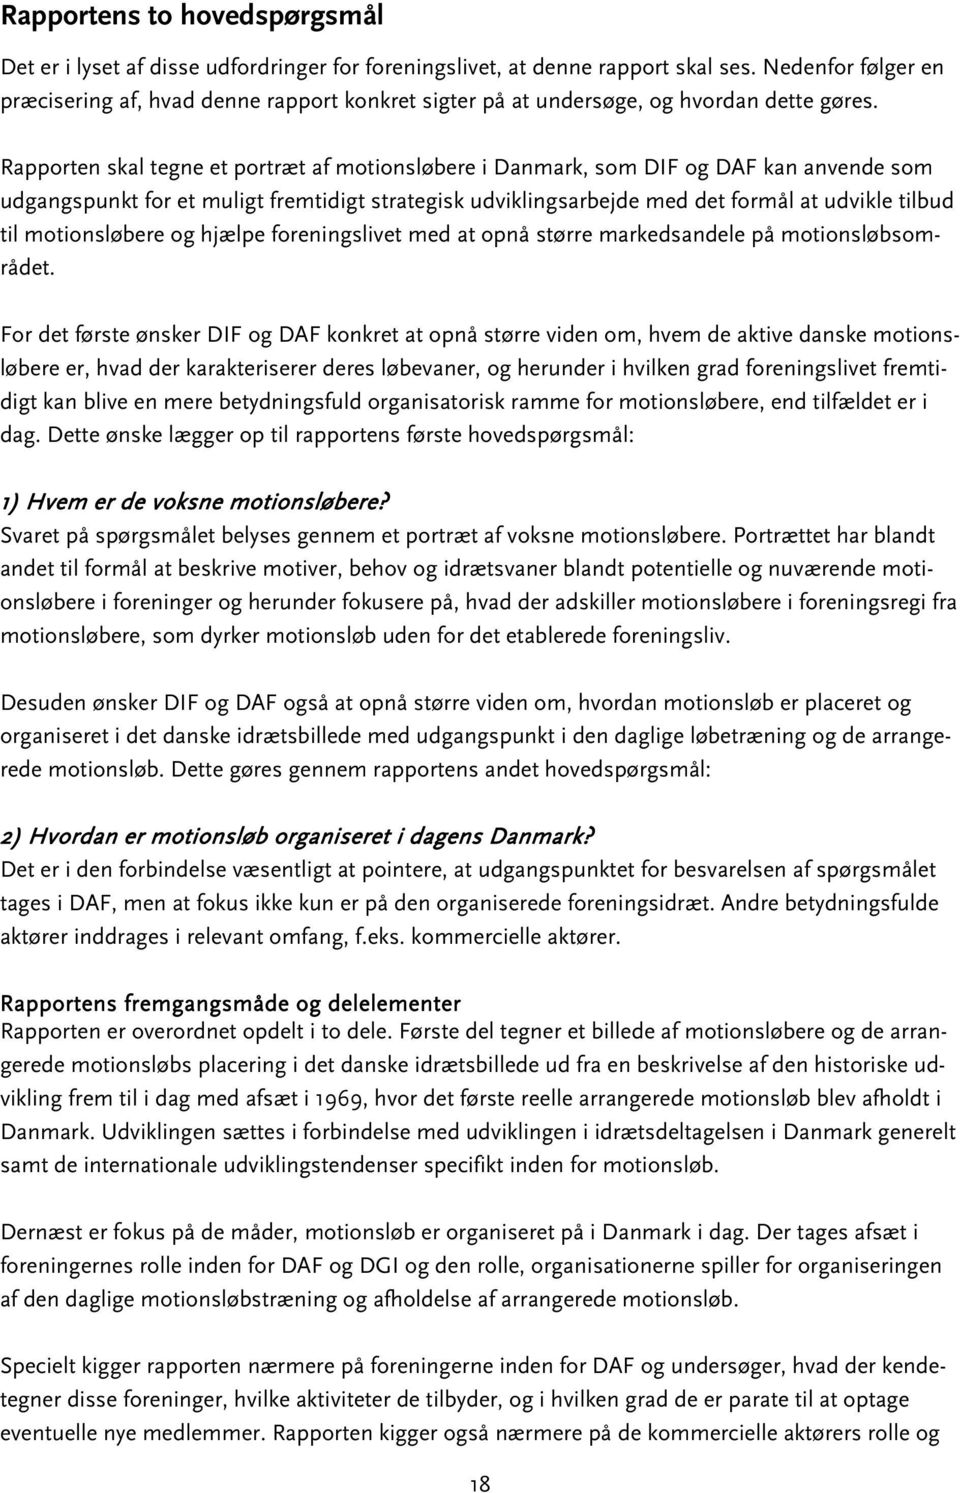 Rapporten skal tegne et portræt af motionsløbere i Danmark, som DIF og DAF kan anvende som udgangspunkt for et muligt fremtidigt strategisk udviklingsarbejde med det formål at udvikle tilbud til